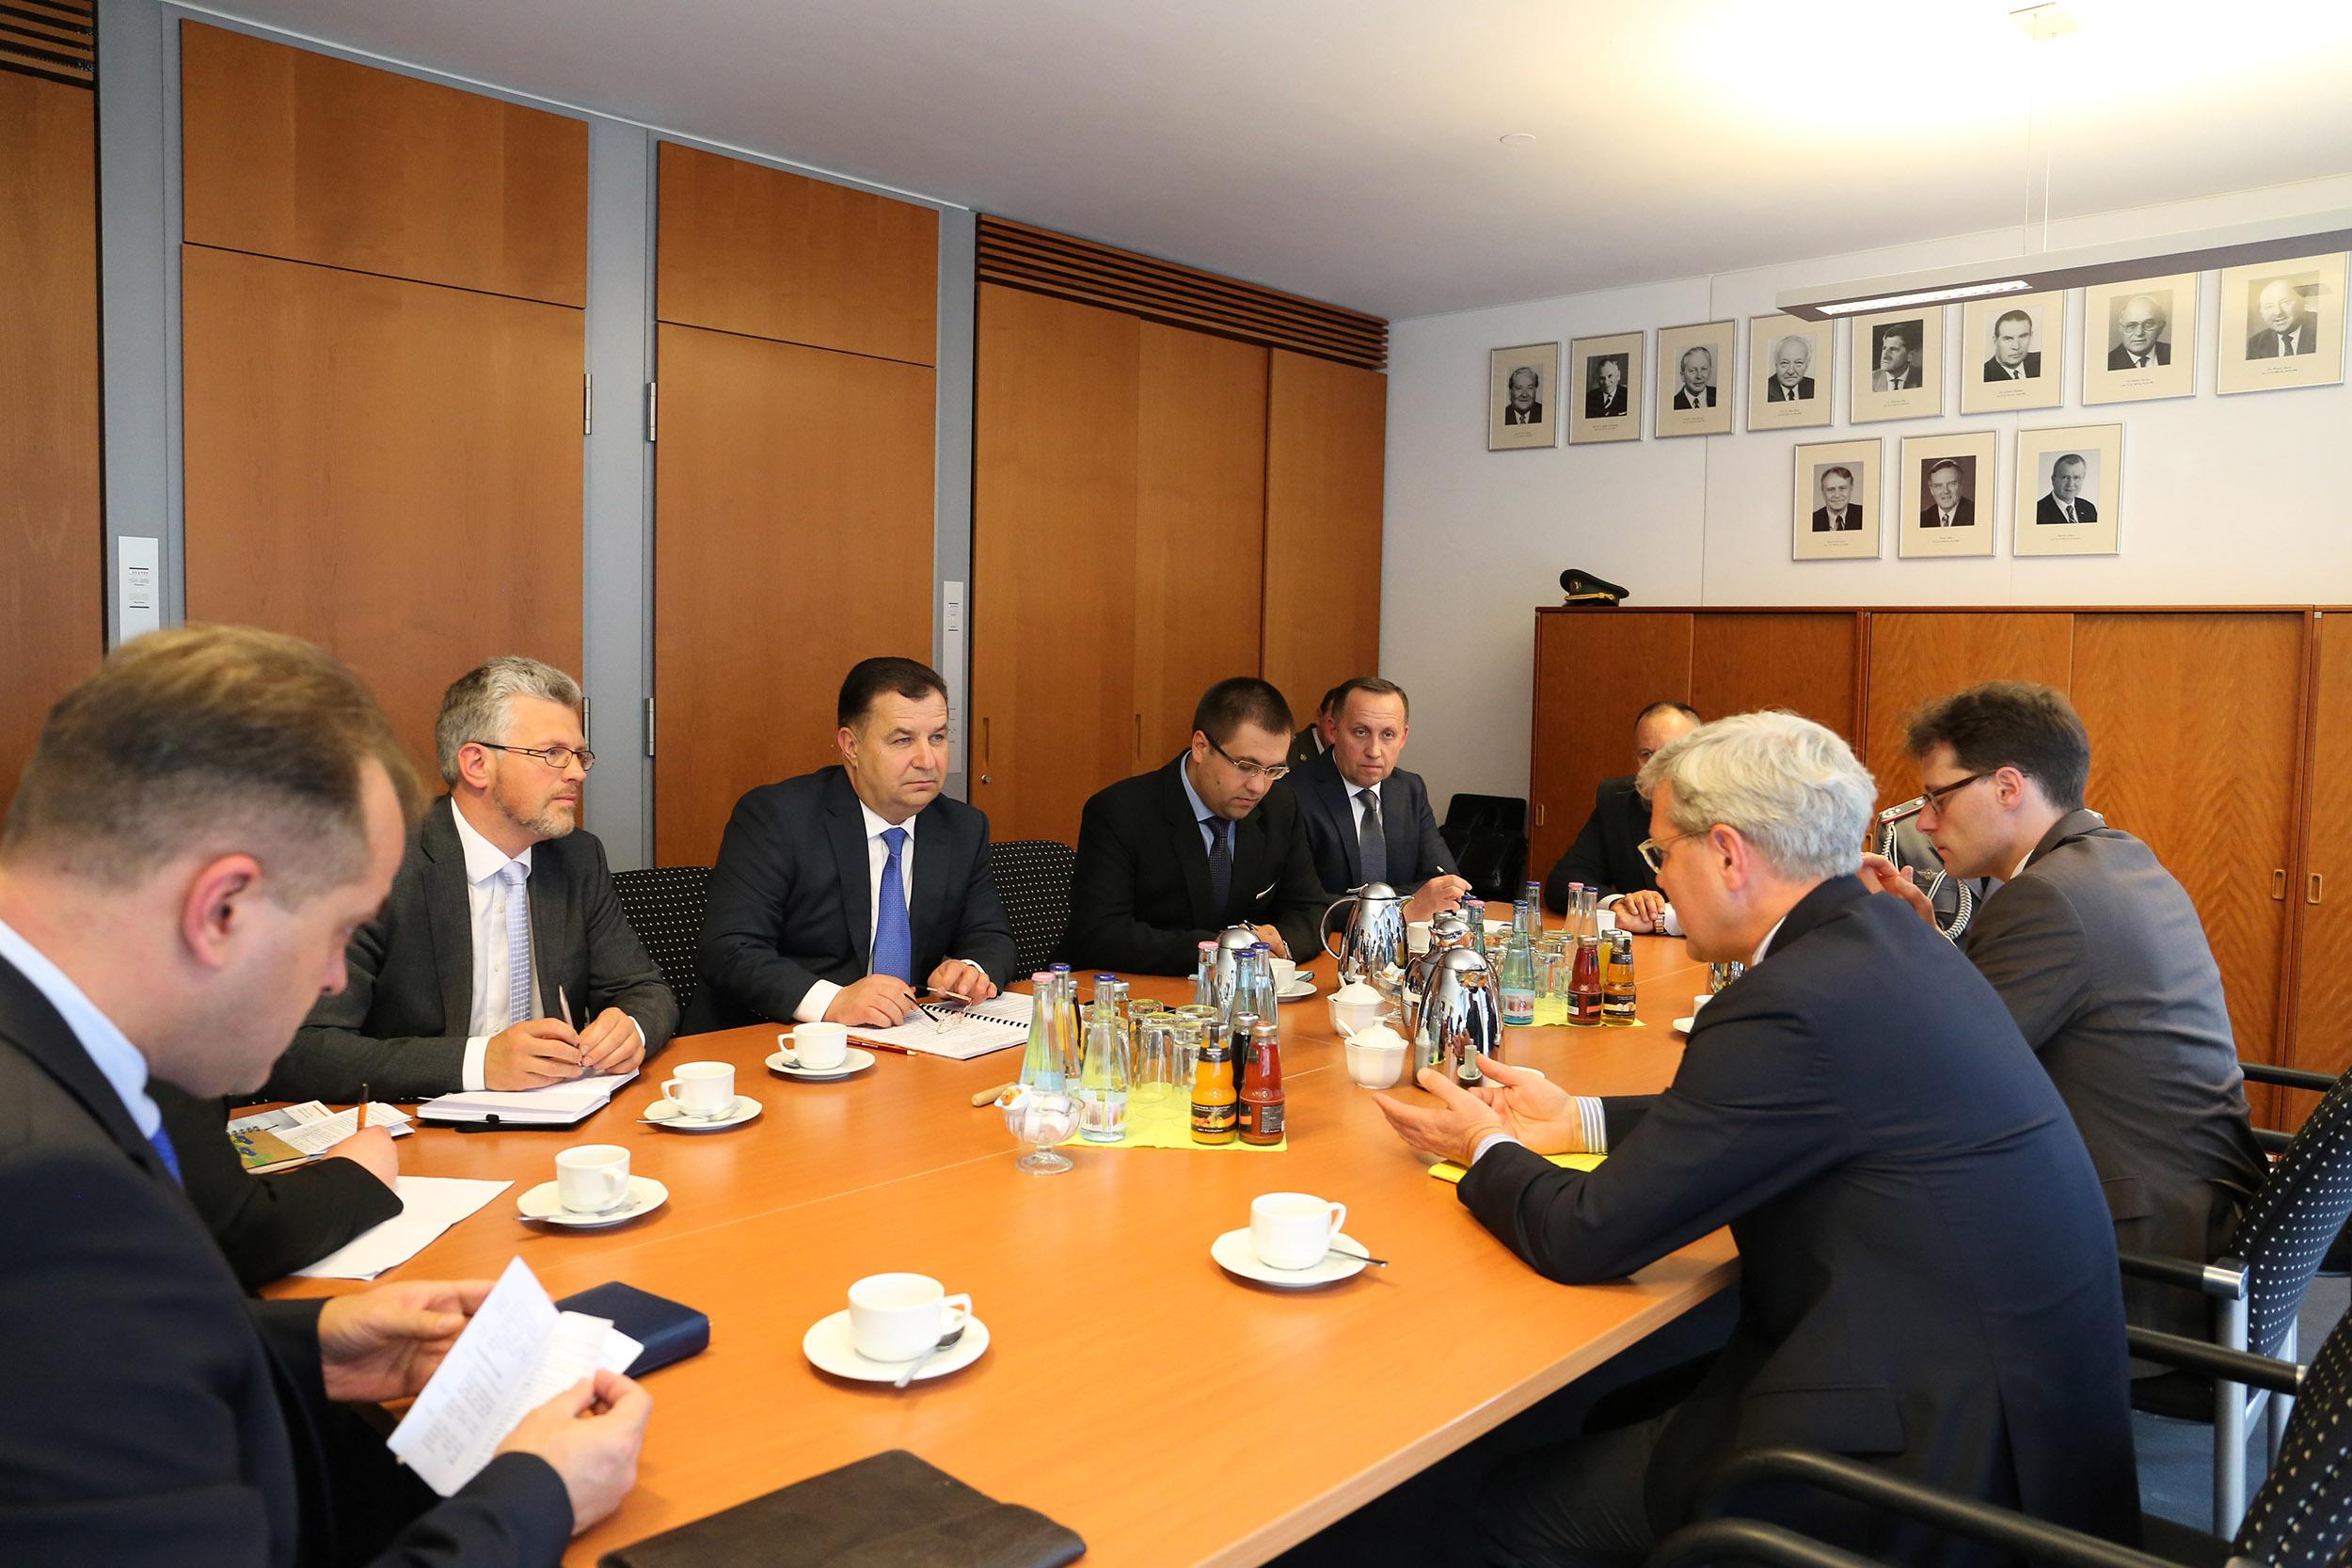  Полторак встретился с председателем комитета по вопросам внешних дел Бундестага_3